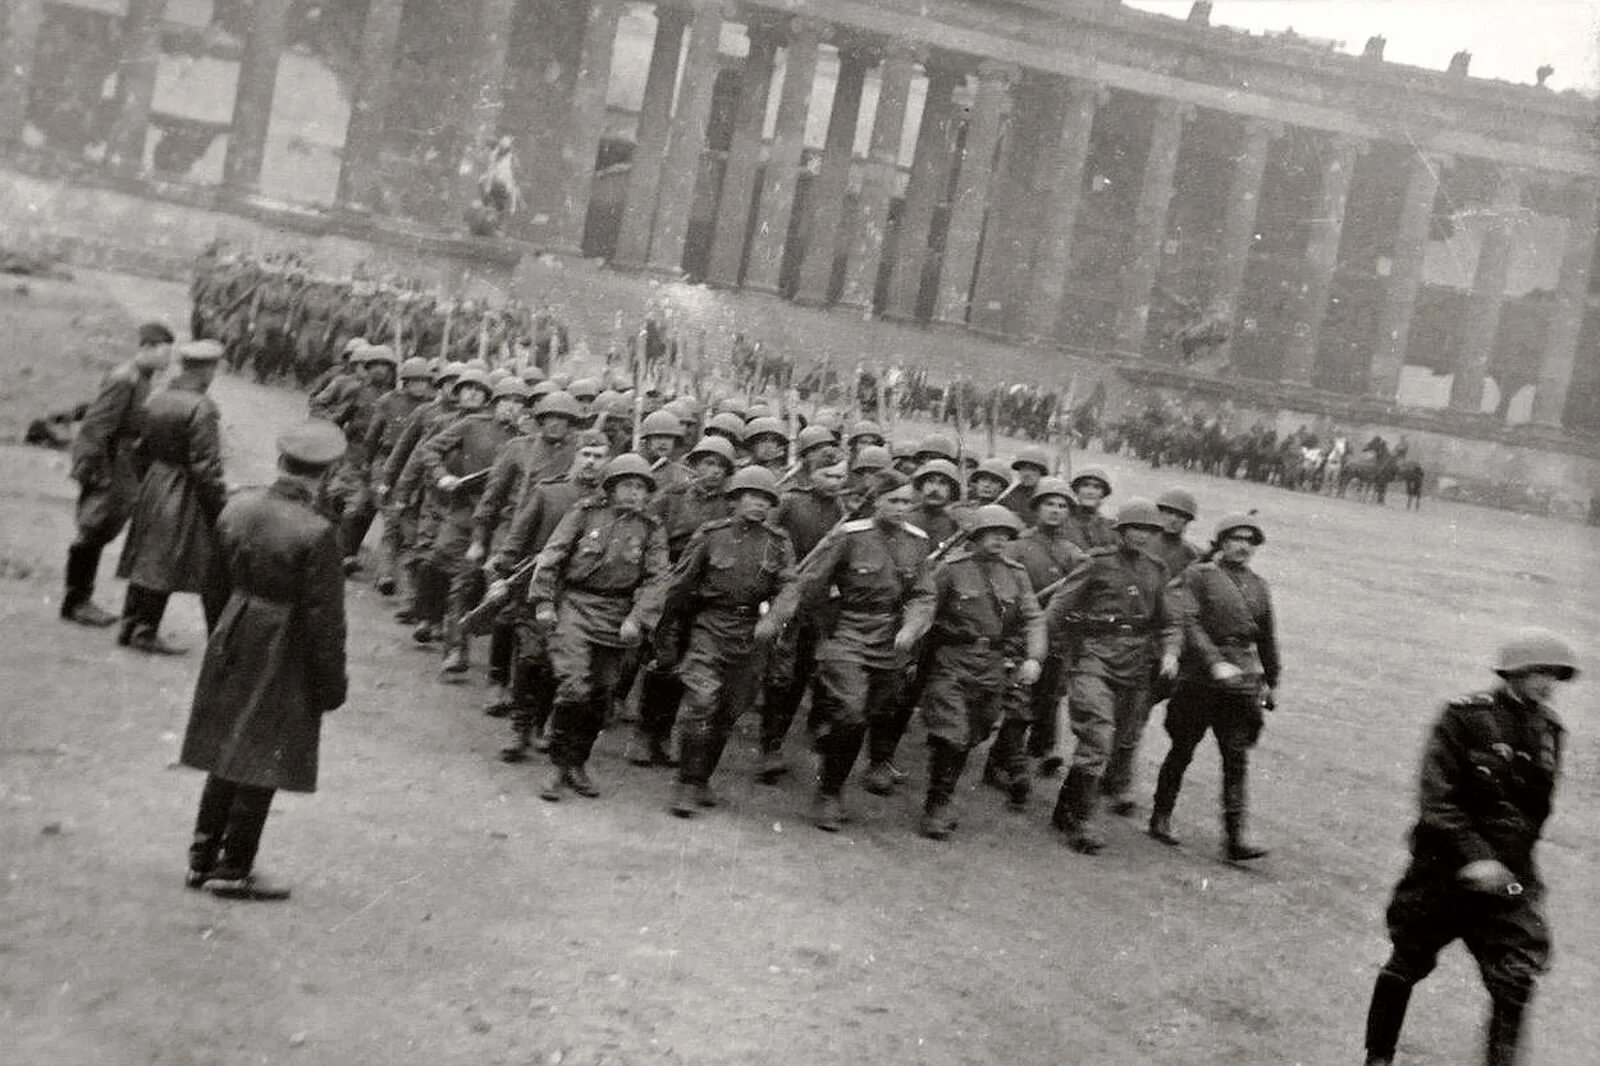 Берлин 5 мая какой год. Парад советских солдат в Берлине 1945. Советские солдаты в Берлине 1945 года. Парад Победы в Берлине 4 мая 1945 года. Советская армия в Берлине 1945.